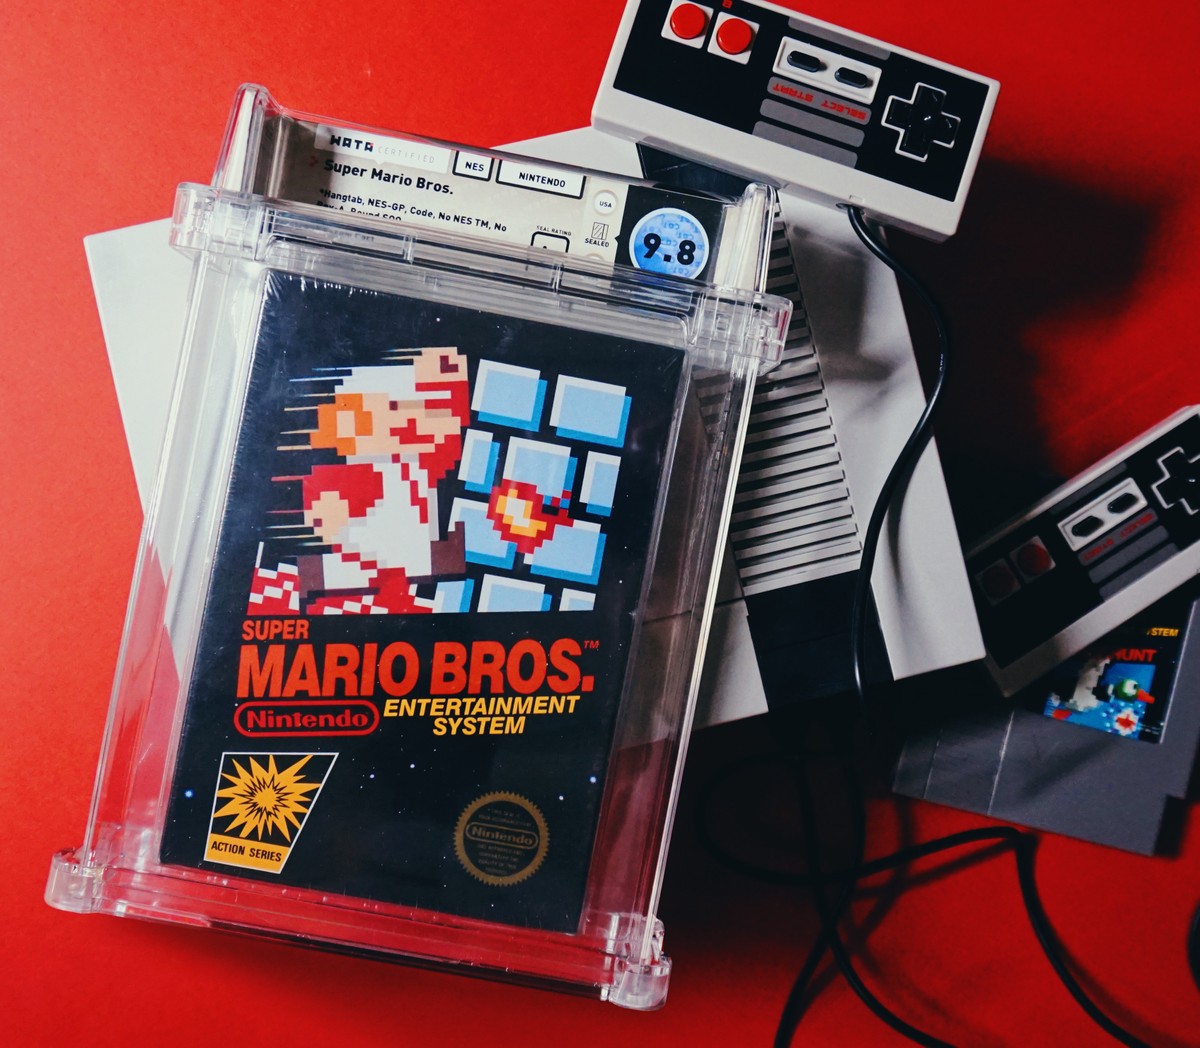 Cartucho de 'Super Mario Bros.' bate recorde ao ser vendido por US$ 2 milhões